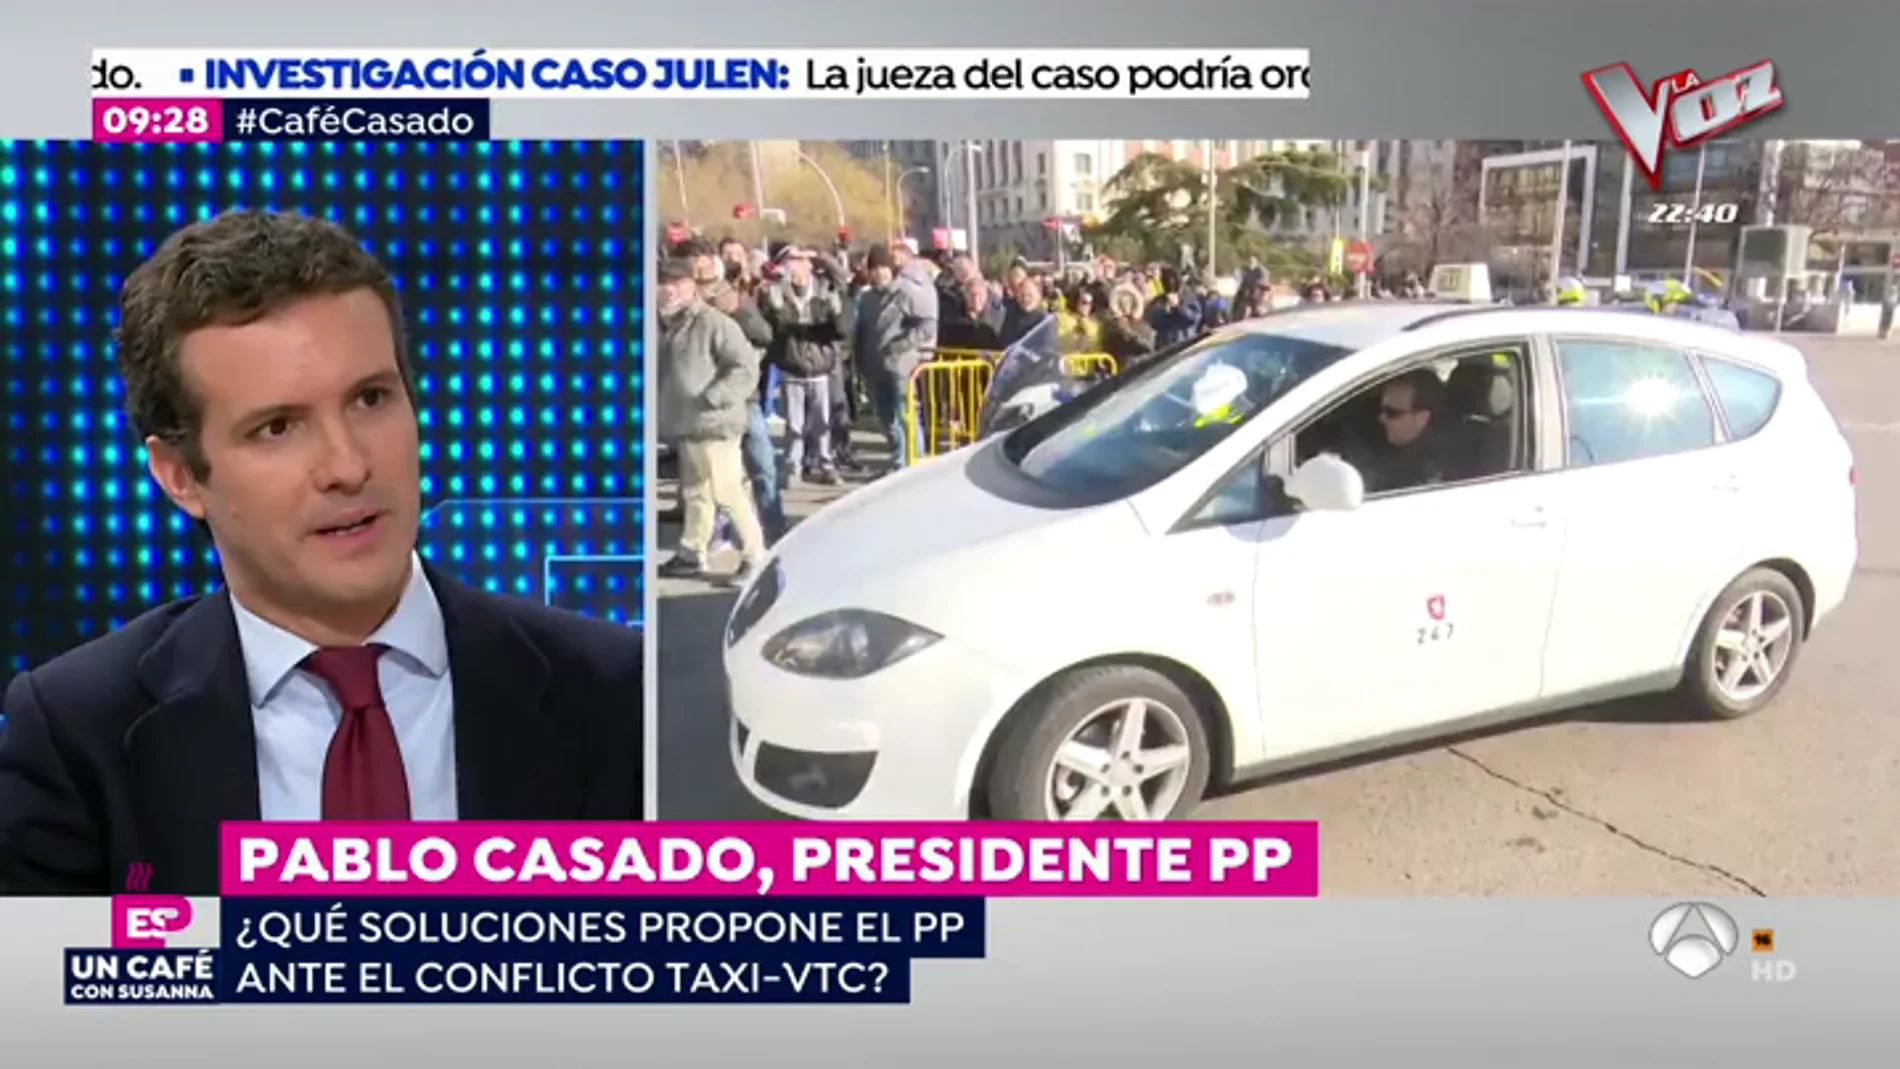 Pablo Casado: "Propongo una liberalización del sector del taxi"